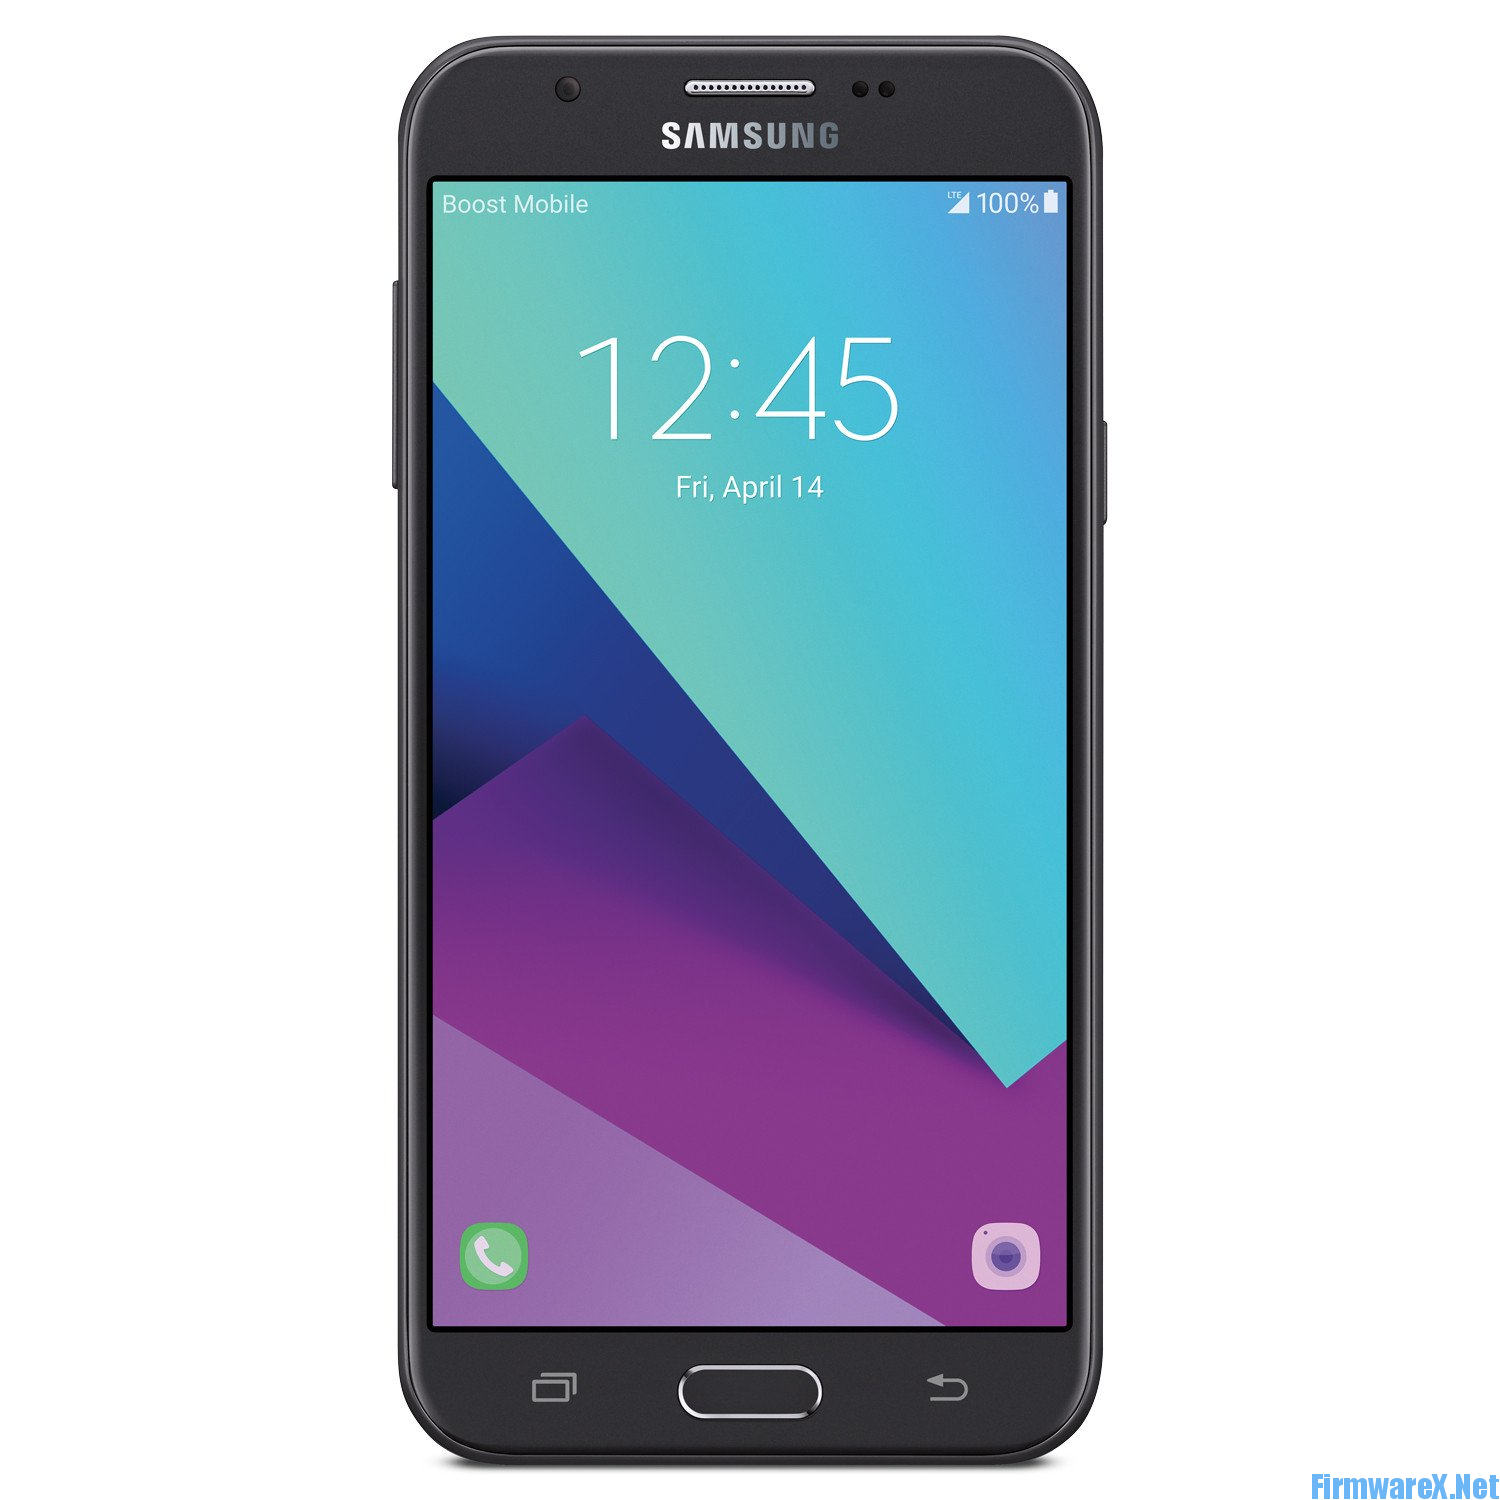 Samsung Galaxy J7 Perx Firmware Rom